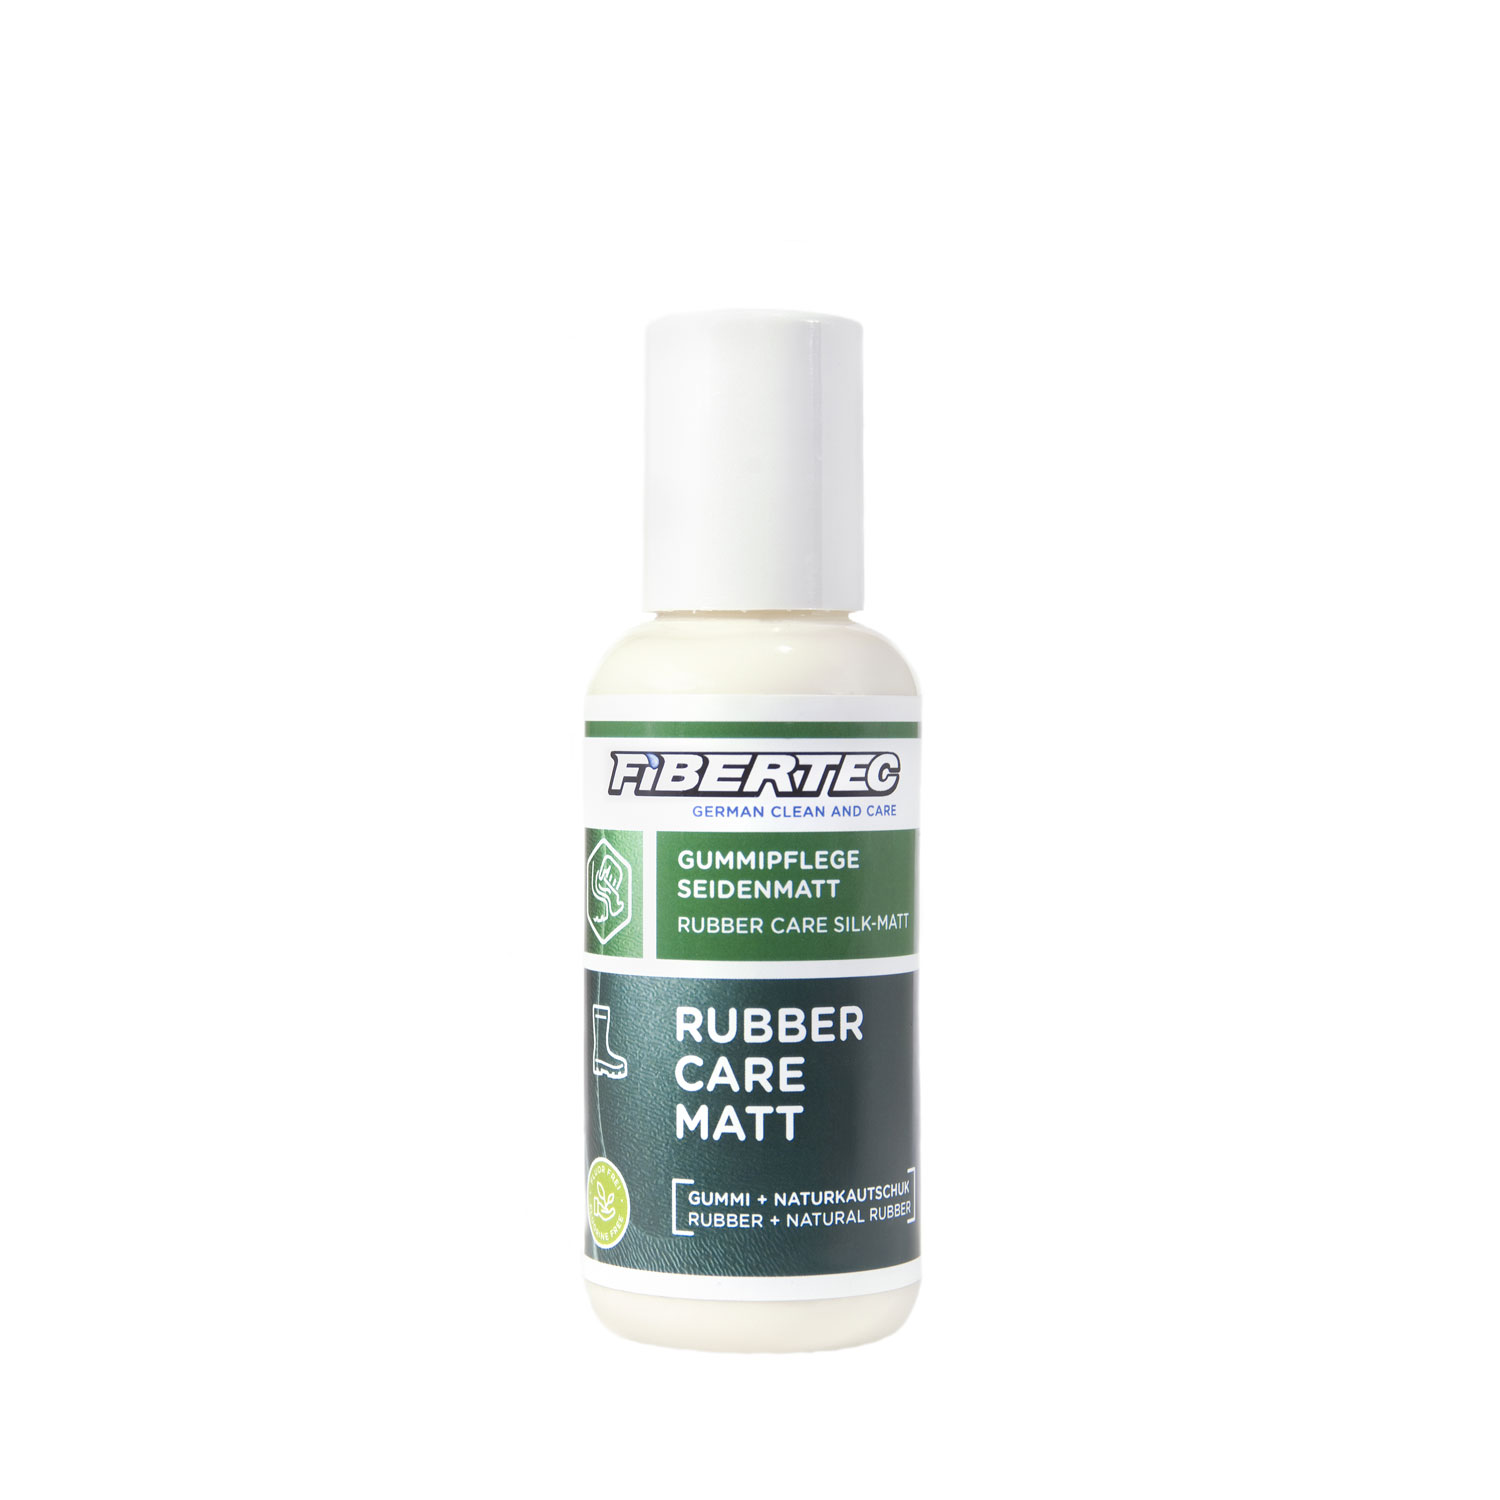 Den vårdande behandligen Fibertec Rubber Care Matt 100 ml. För gummistövlar och gummidetaljer på kängor.